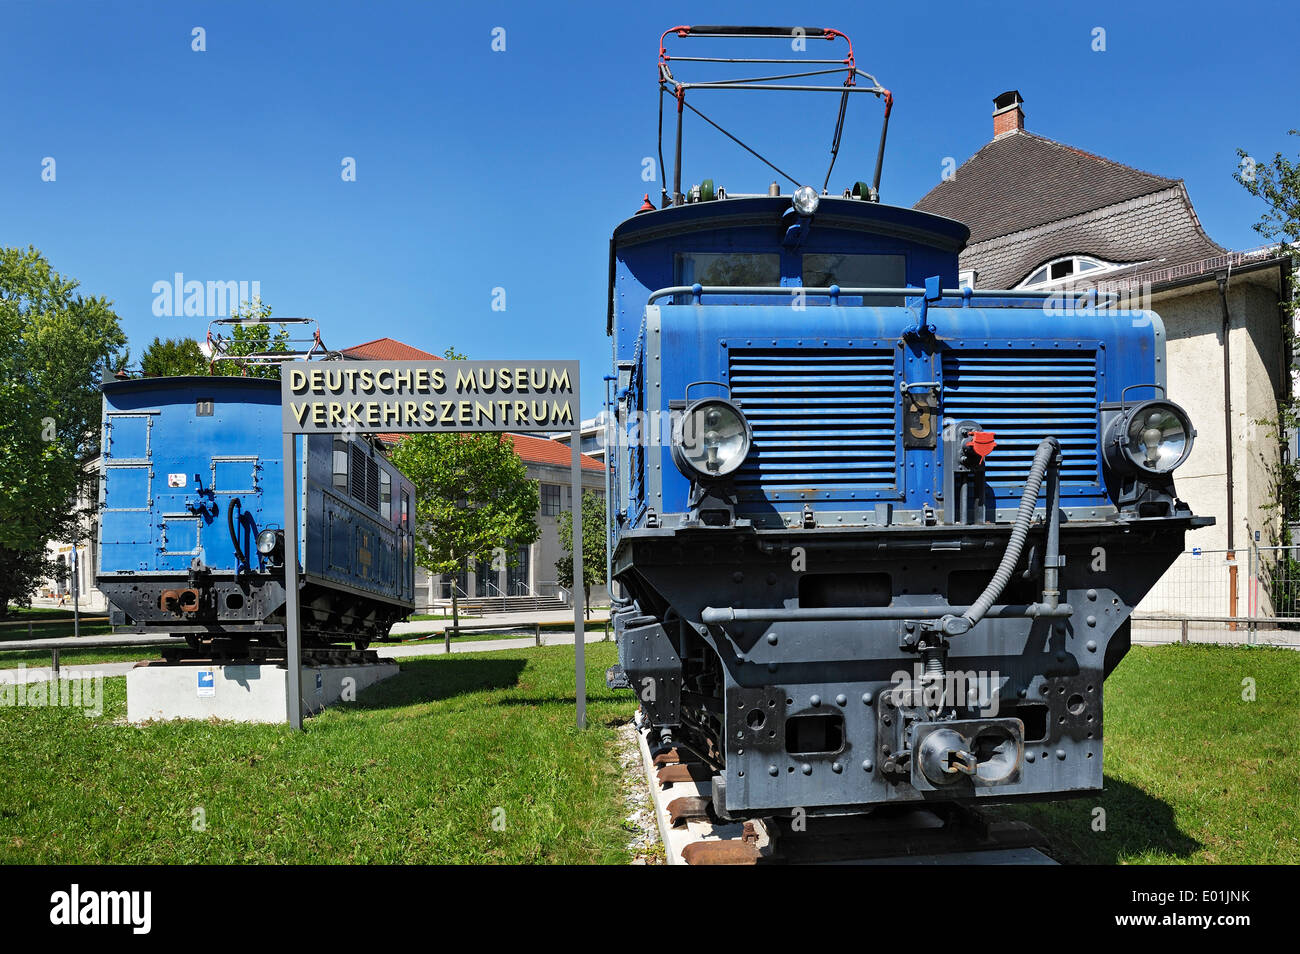 Lokomotive der Zugspitzbahn Eisenbahn von 1929, Deutsches Museum Verkehrszentrum, Deutsche Museum Transportation Center, München Stockfoto